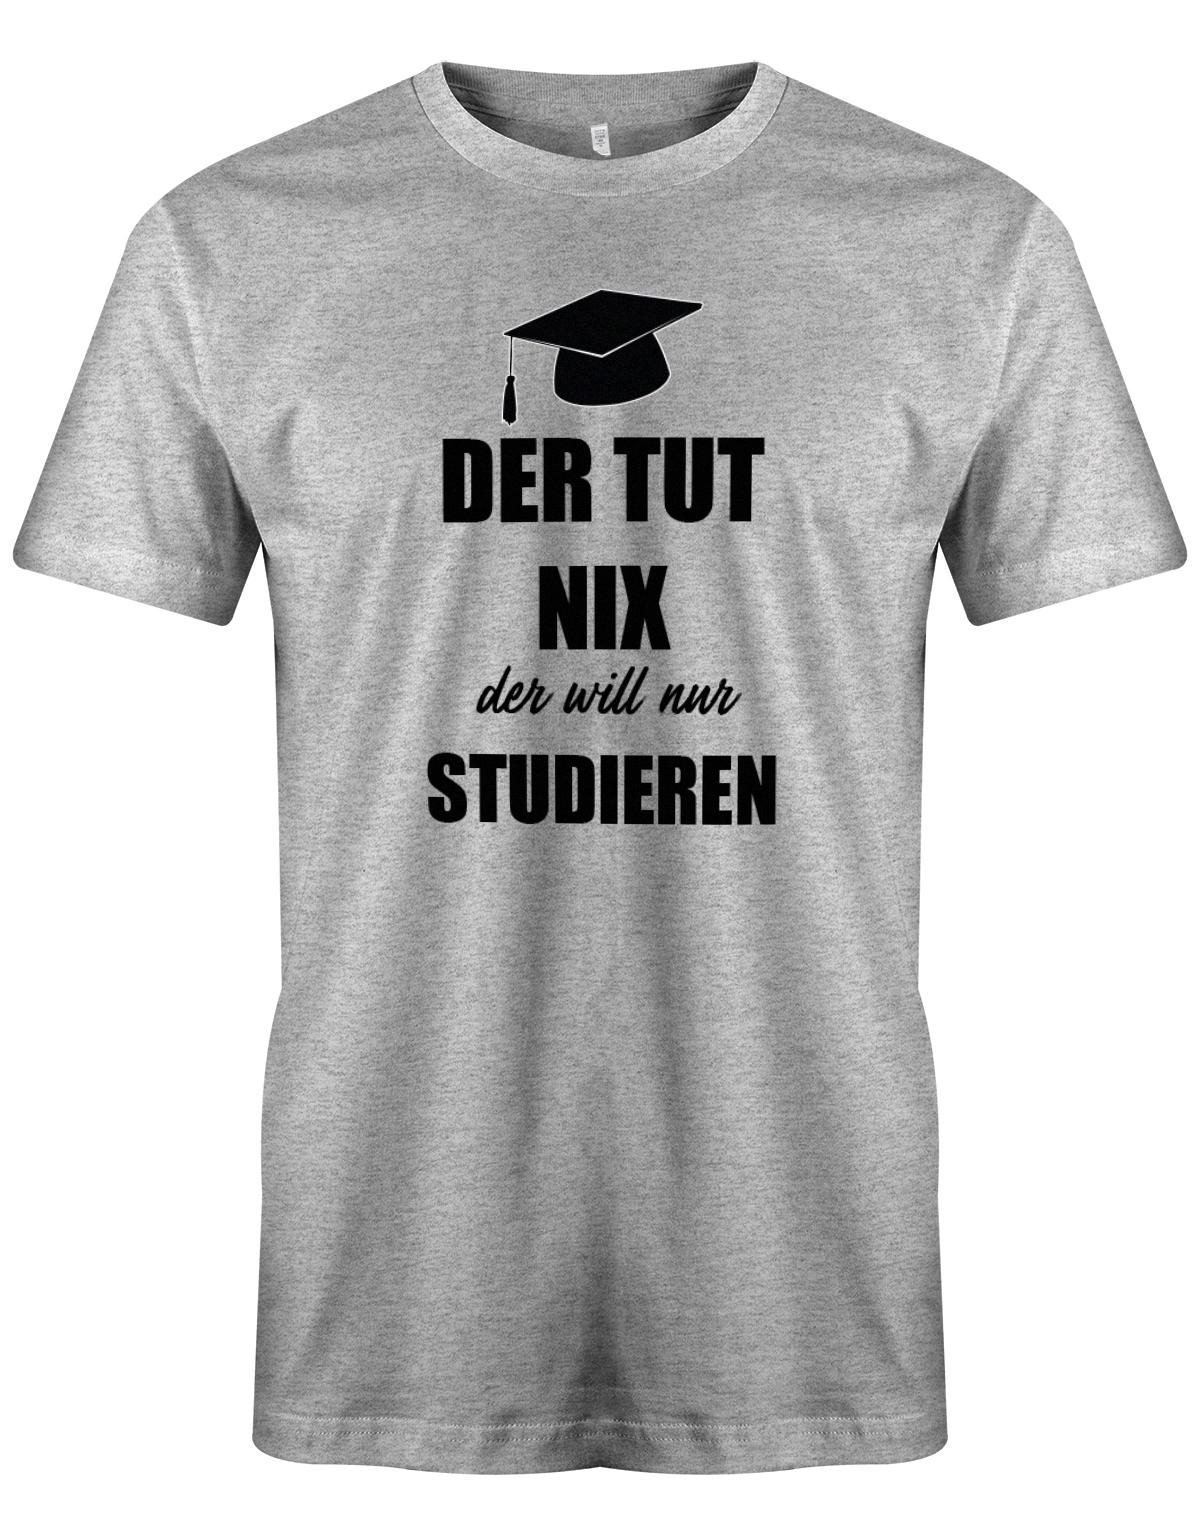 Der-tut-nix-der-will-nur-Studieren-Herren-Studium-Shirt-Grau